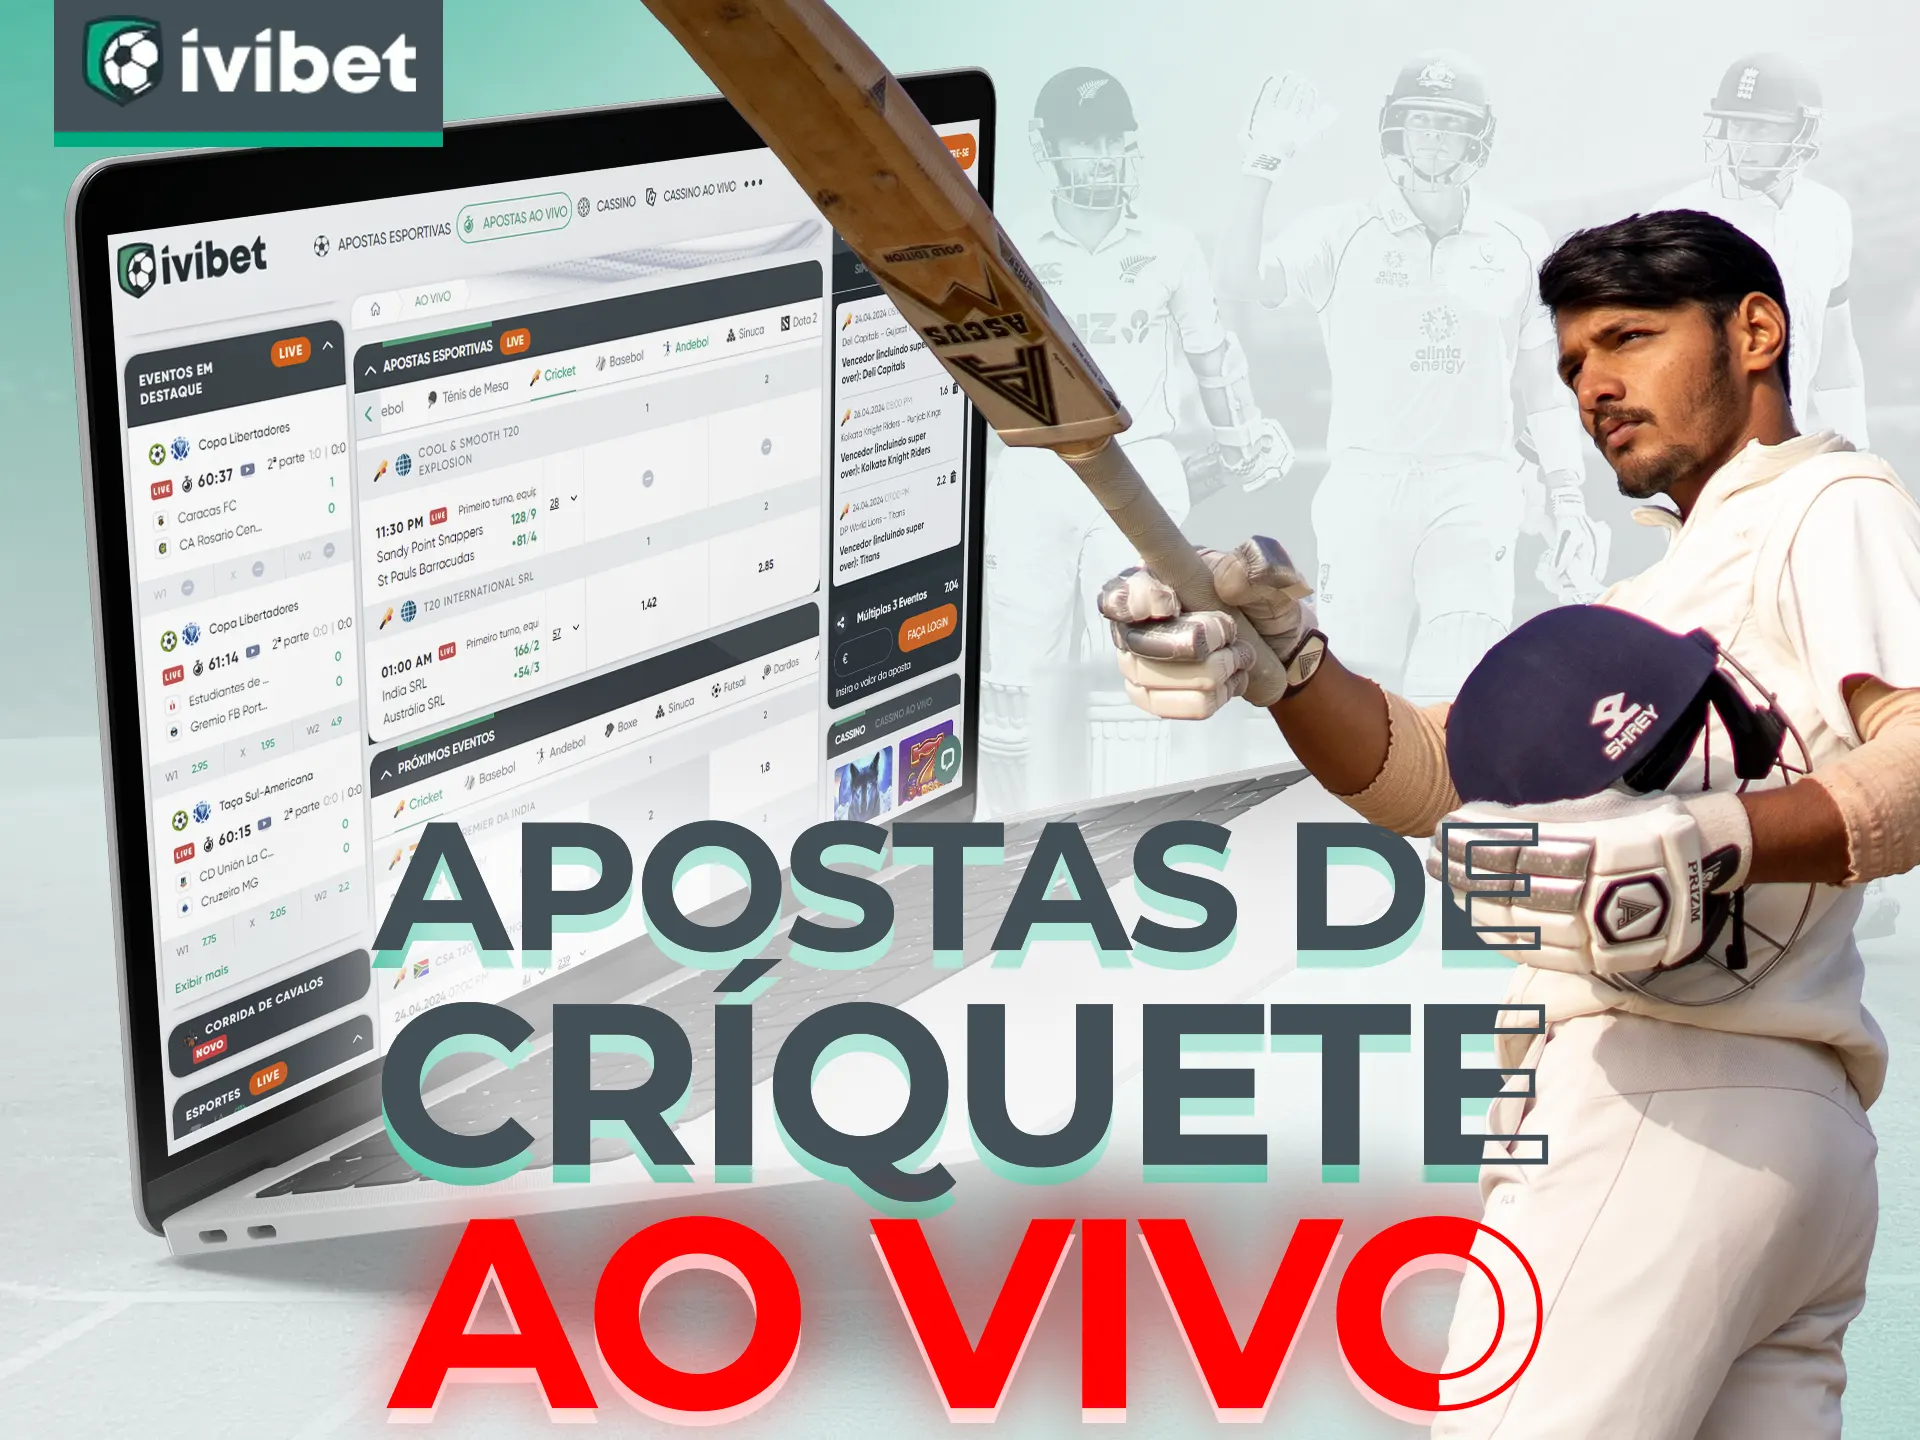 Aproveite a oportunidade para fazer uma aposta em uma partida de críquete ao vivo no Ivibet.